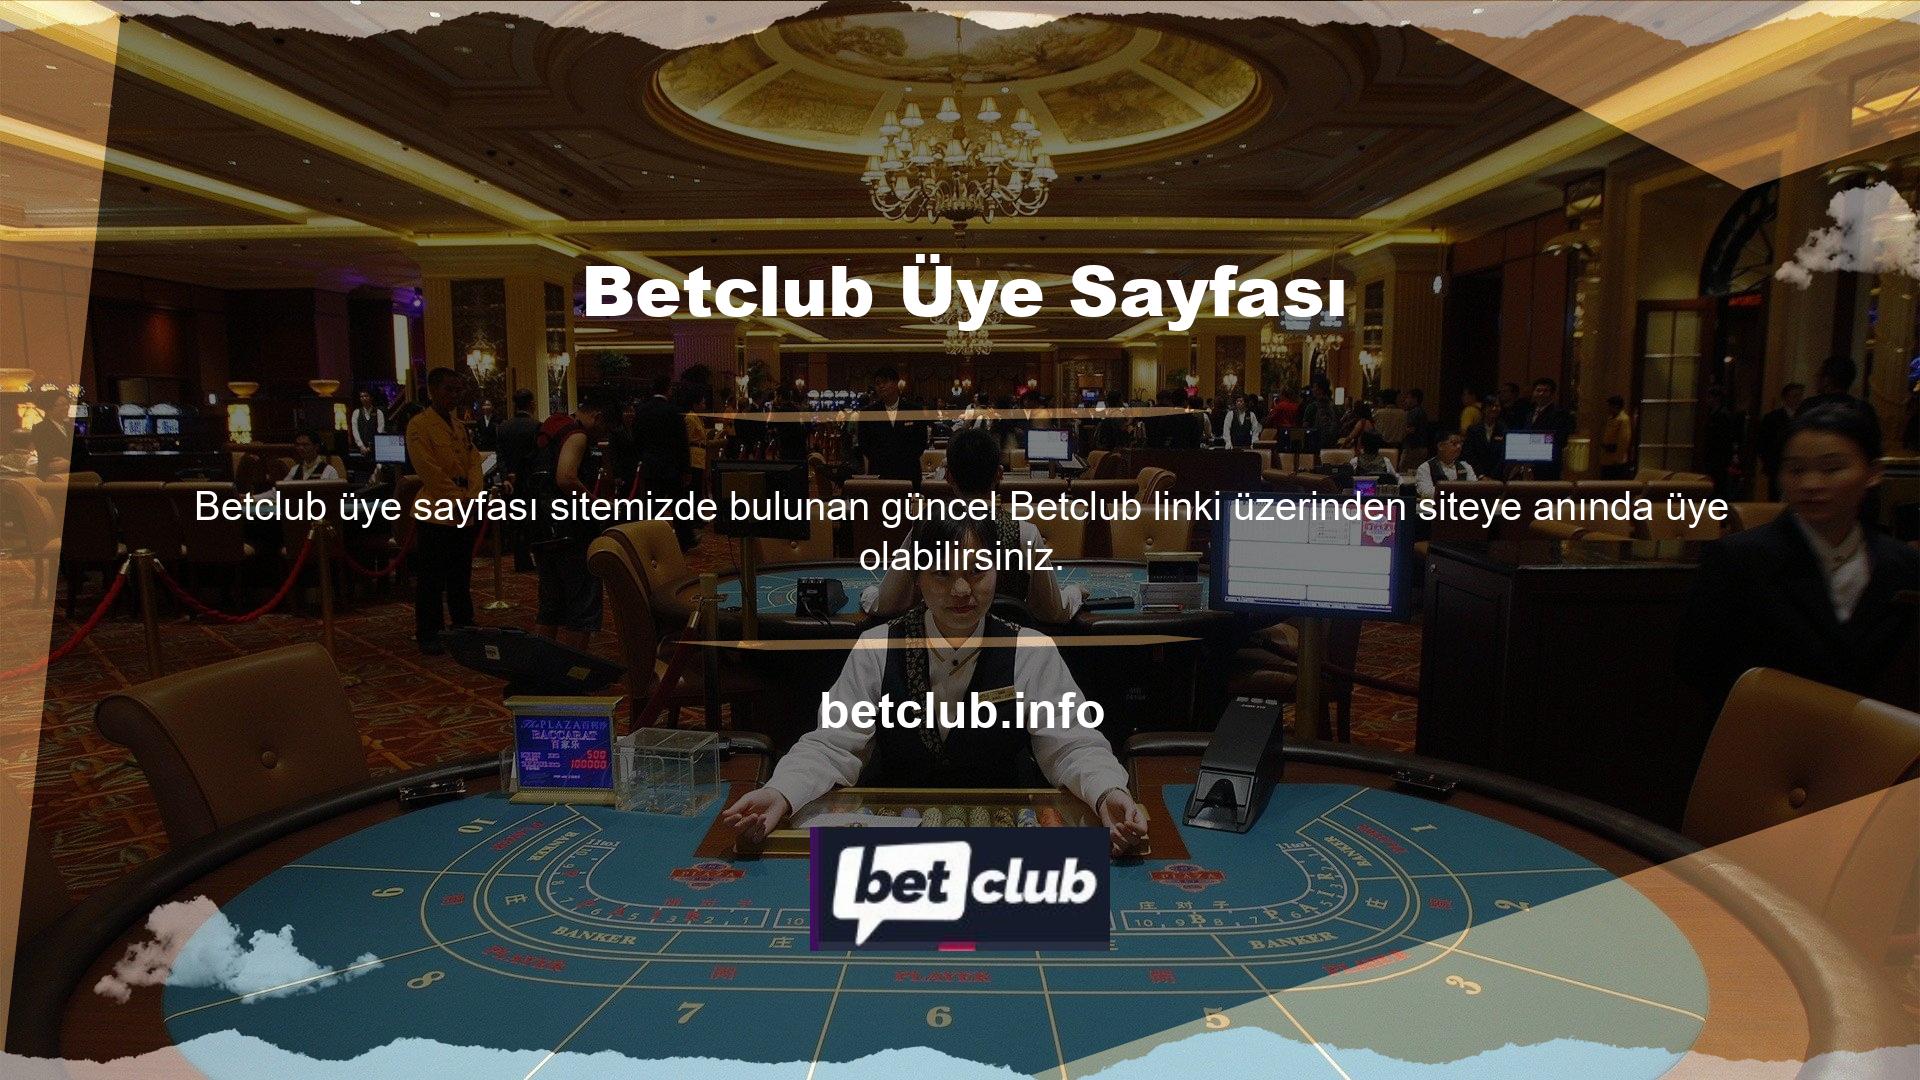 Betclub, üyelerine casino oyunları ve oyunla ilgili hizmetler sunmayı amaçlamaktadır